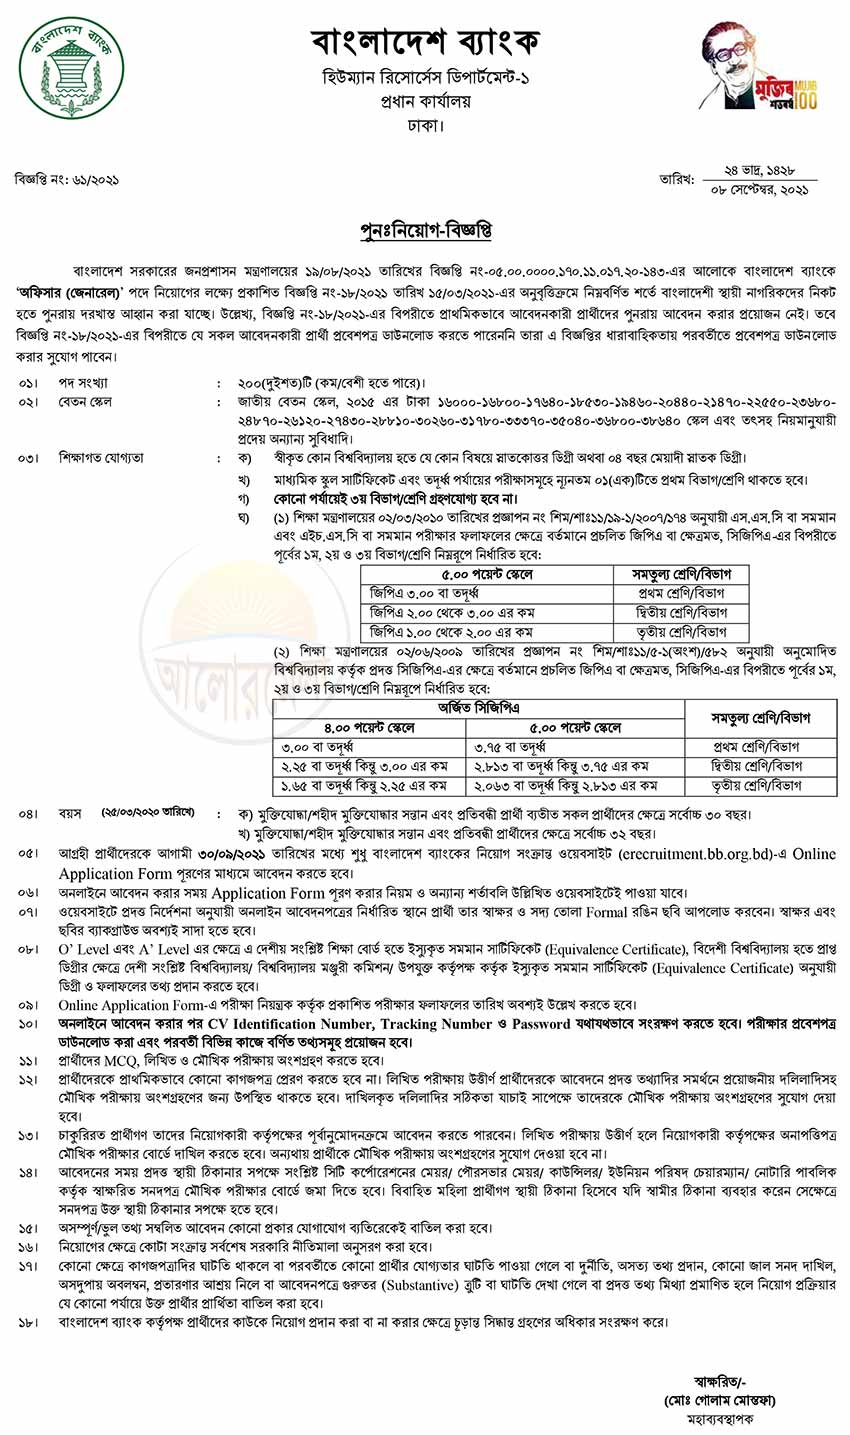 Bangladesh Bank Officer Job Circular 2021 new